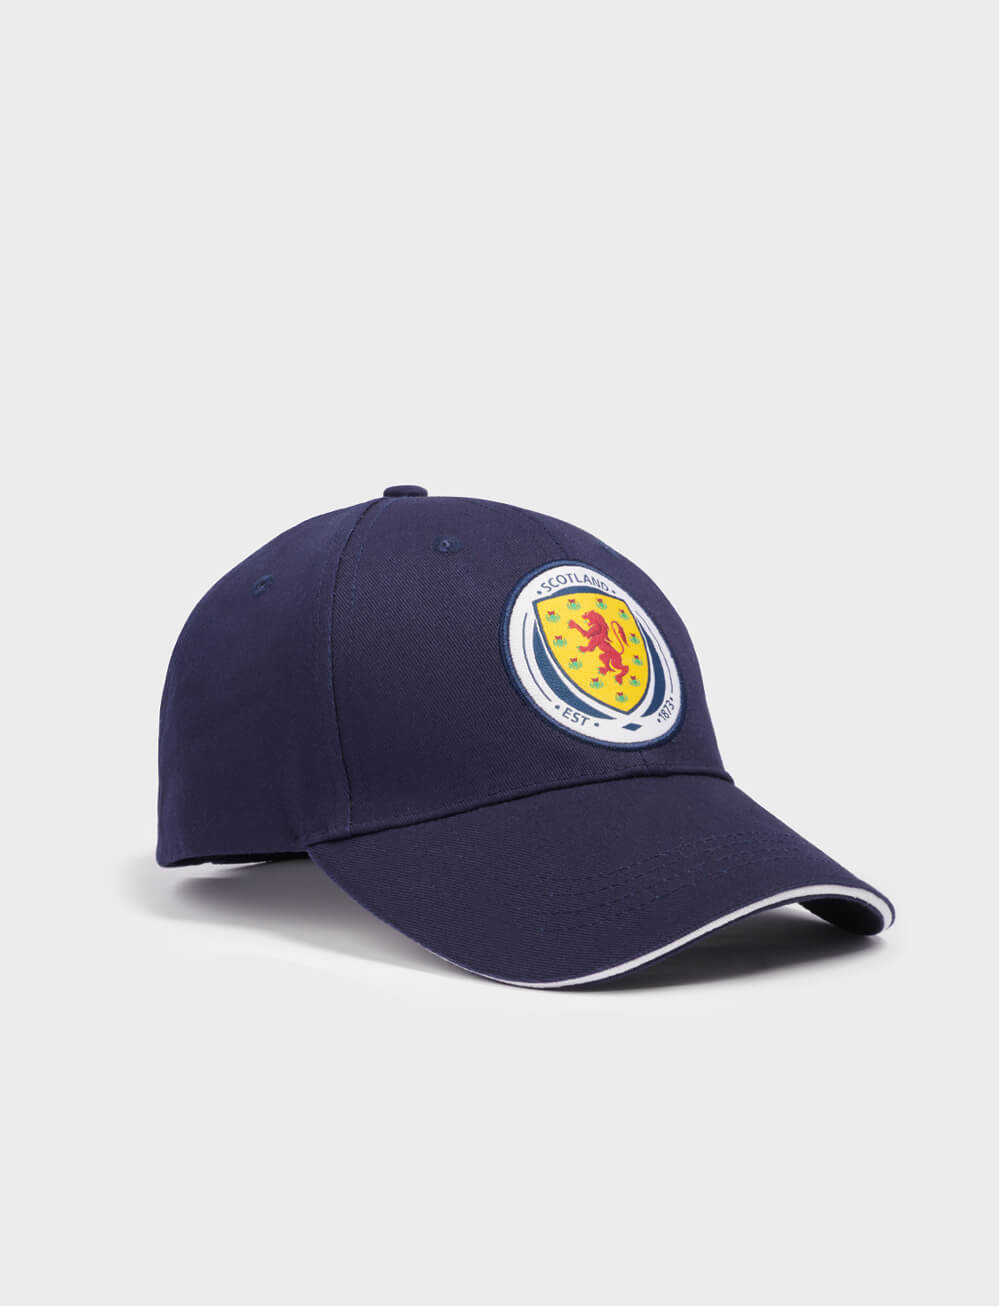 Official Team Scotland Kids Cap - Blue - The World Football Store